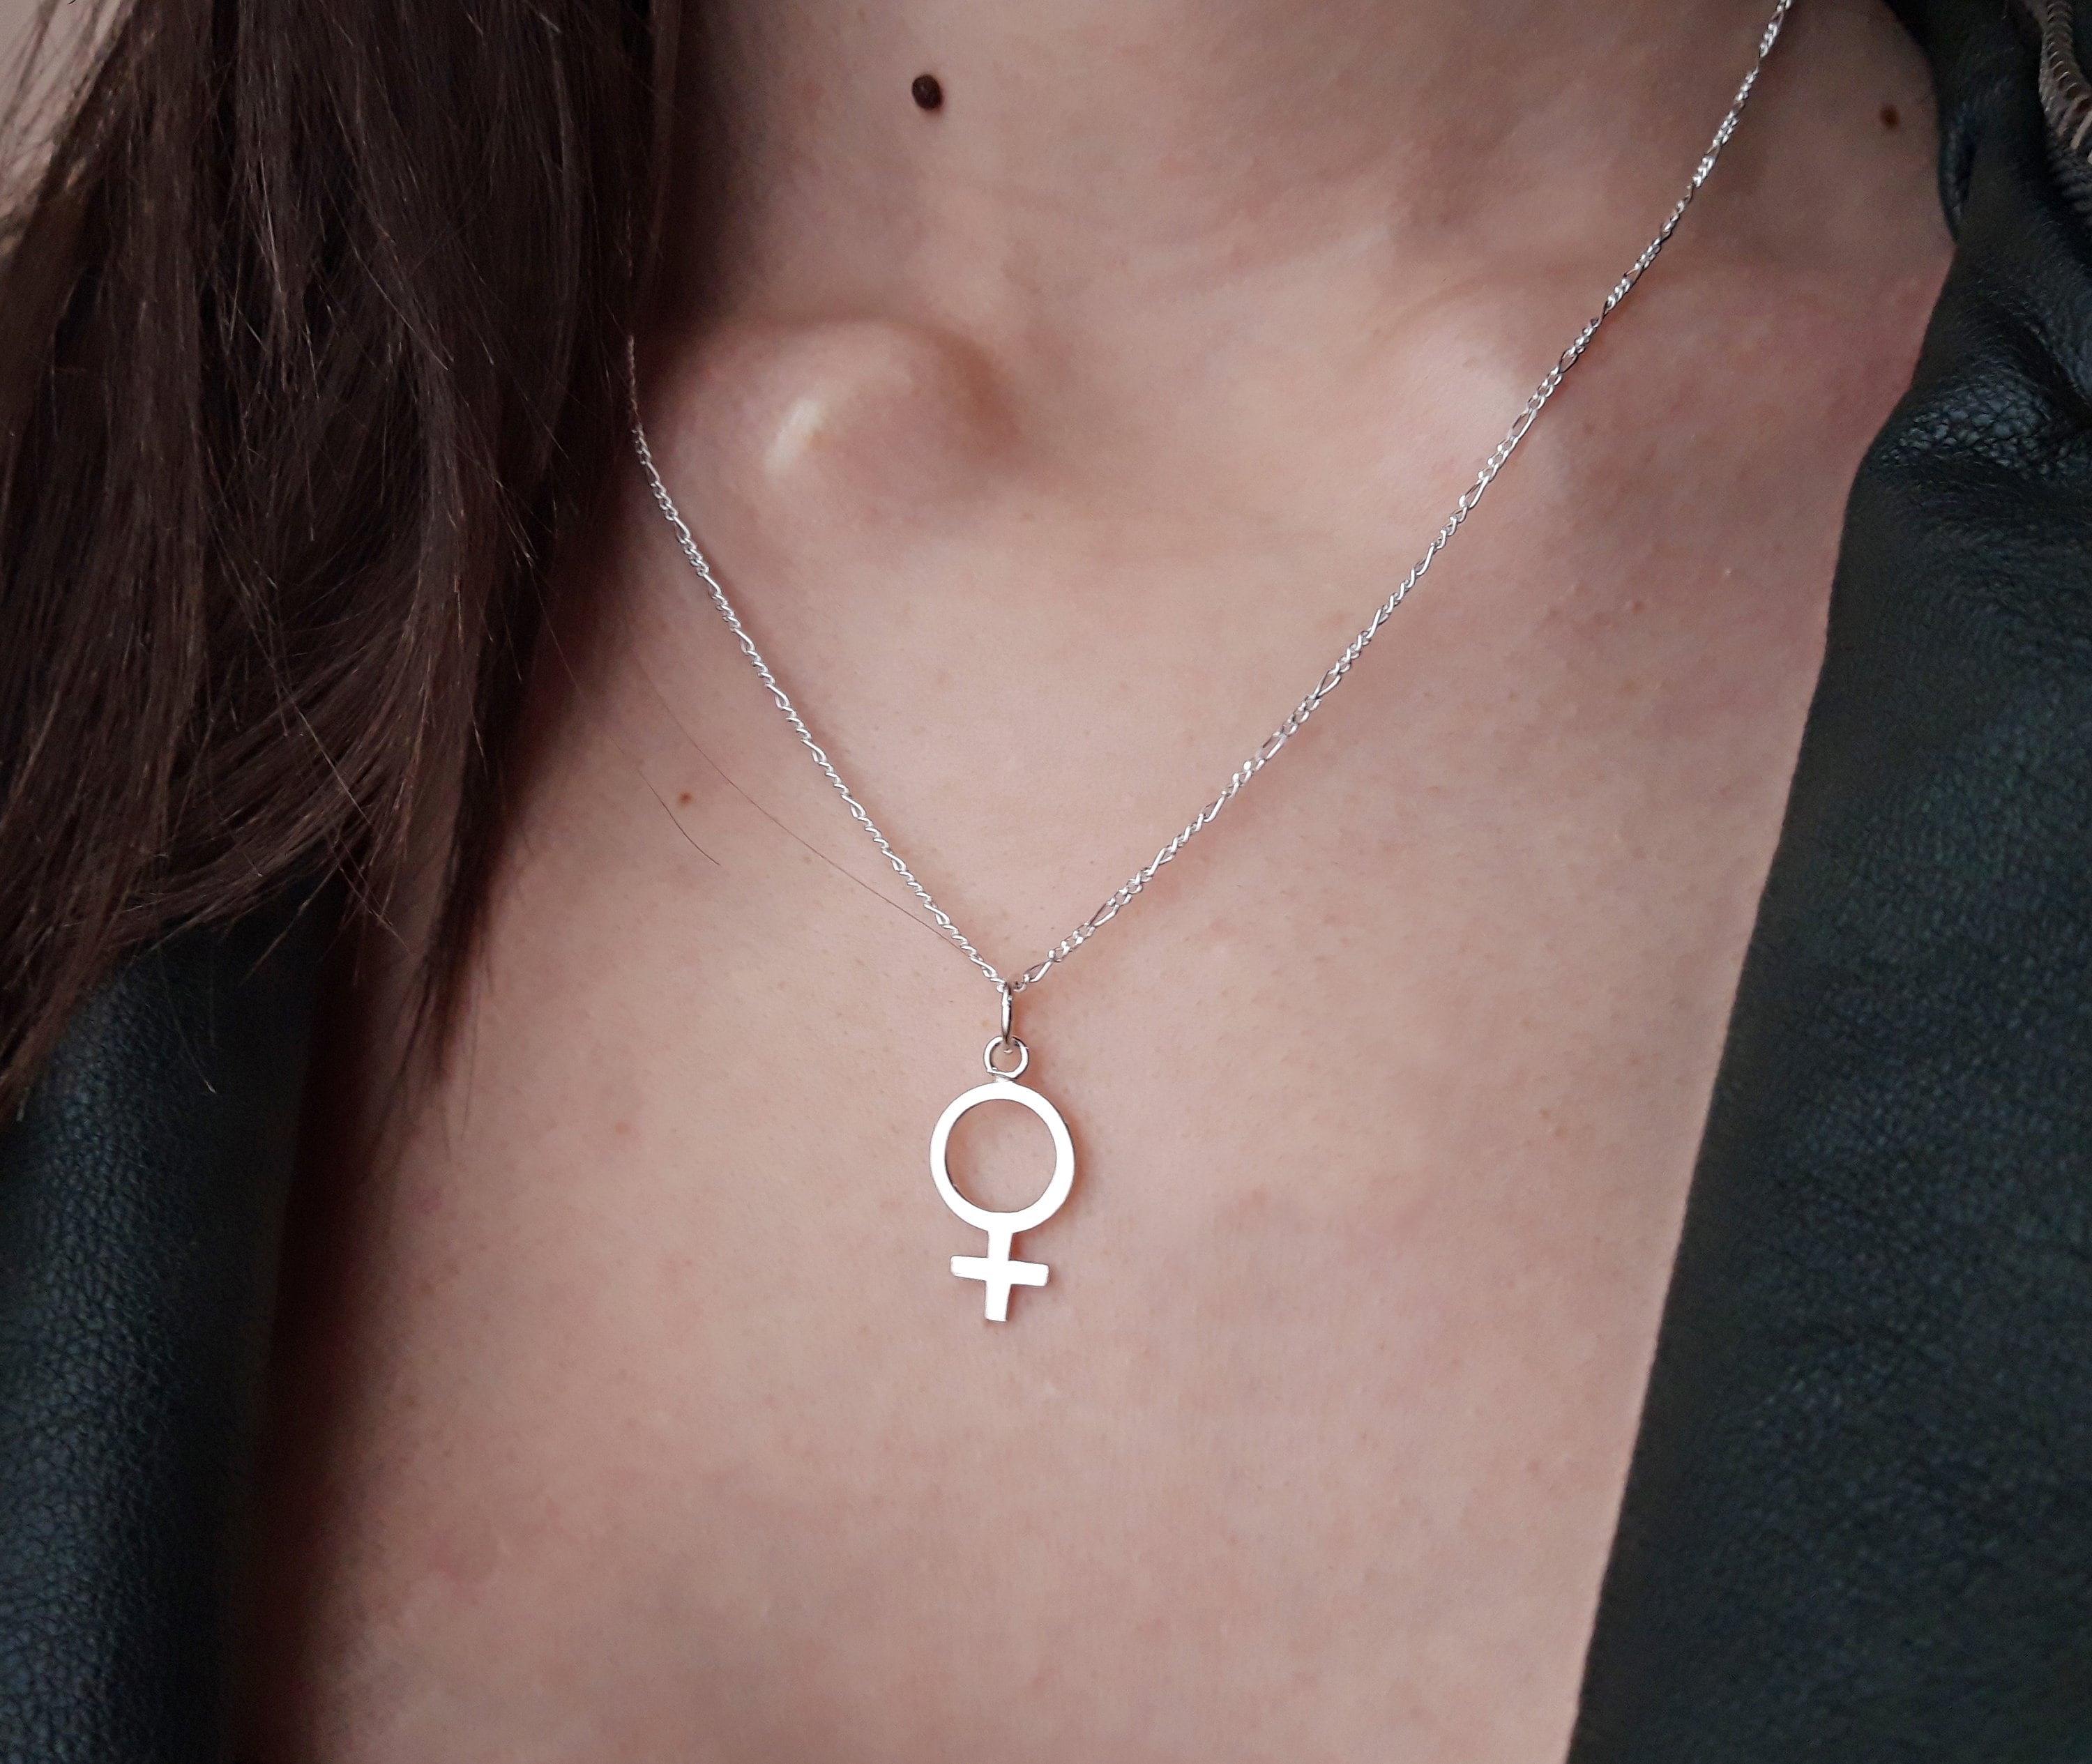 Collar del símbolo de joyería feminista colgante Etsy